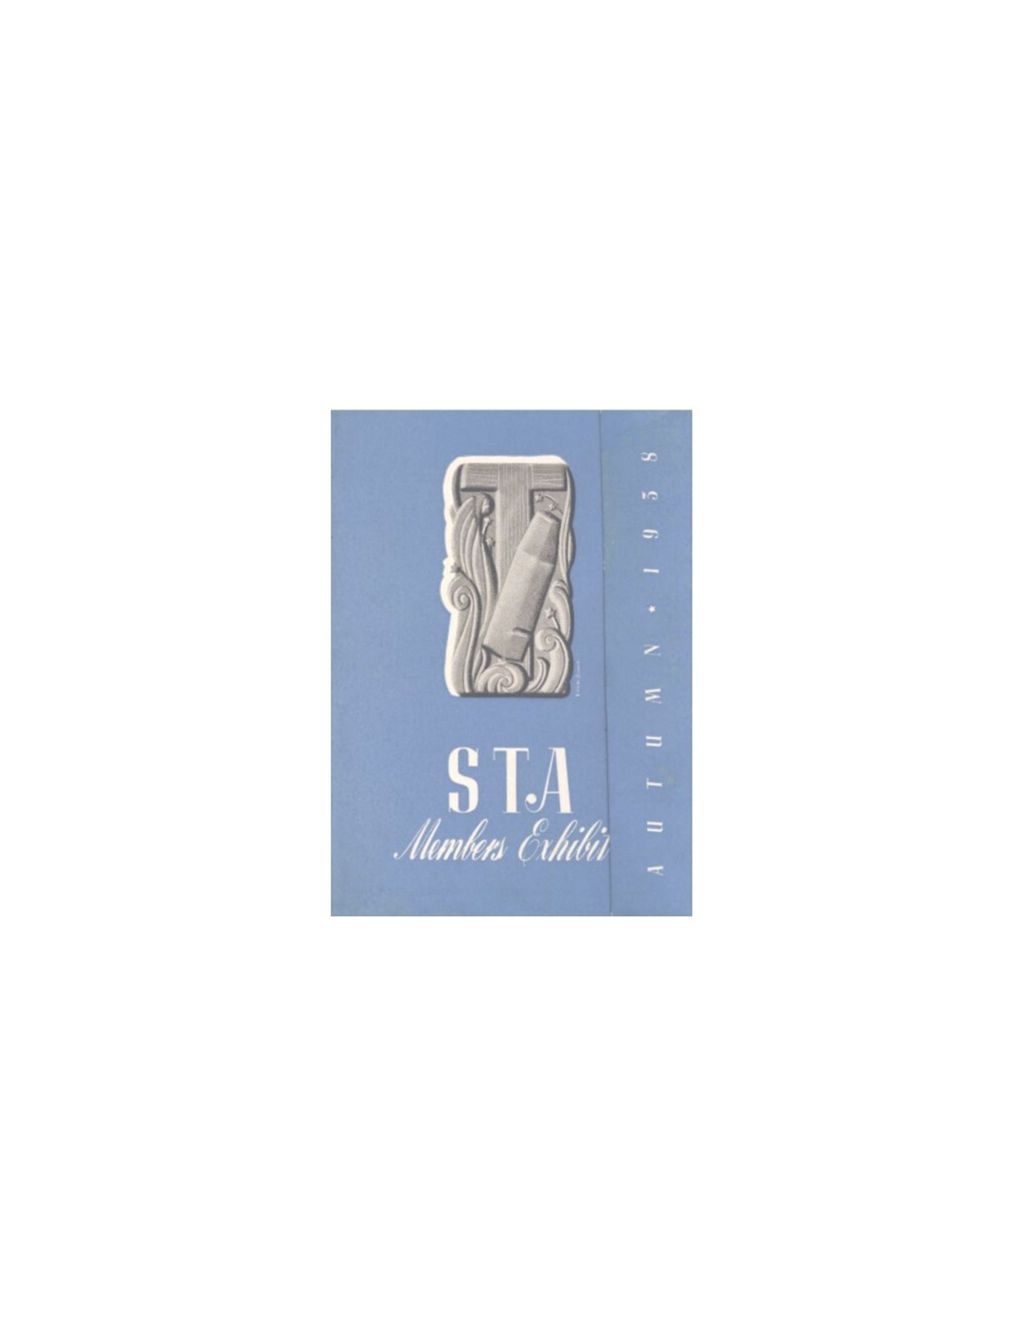 Miniature of Invitation to STA 13th Annual Exhibition